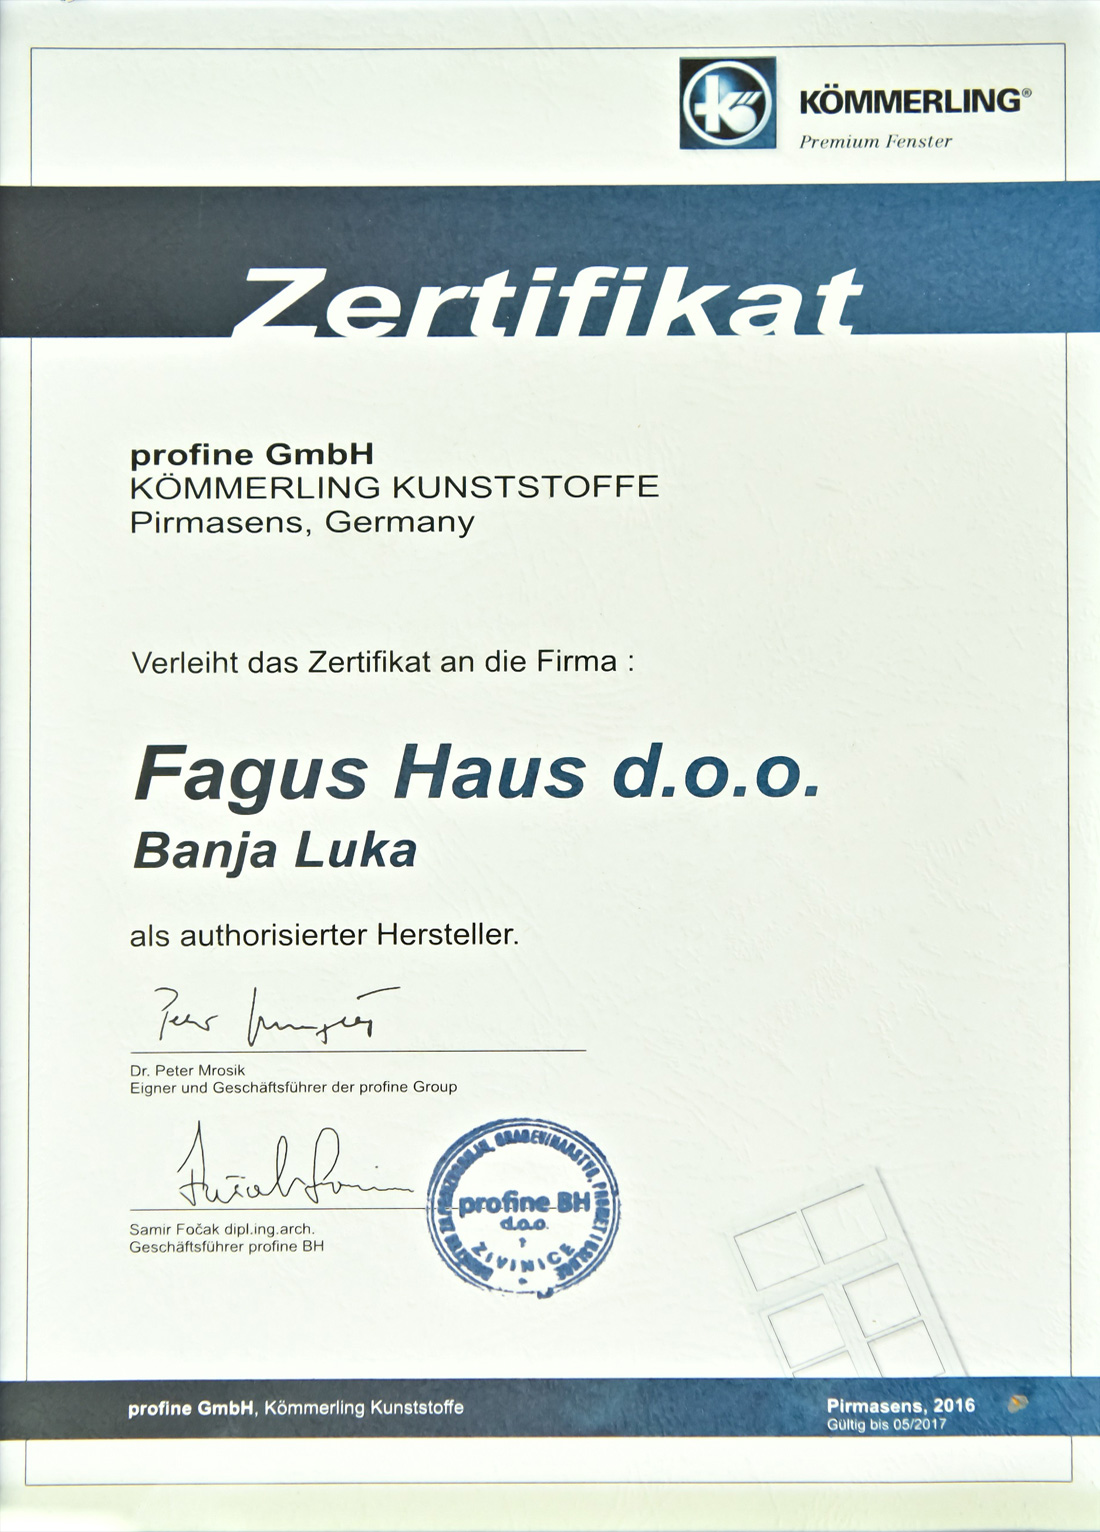 Kömmerling Kunststoffe Authorisierter Hersteller Fagus Haus d.o.o.